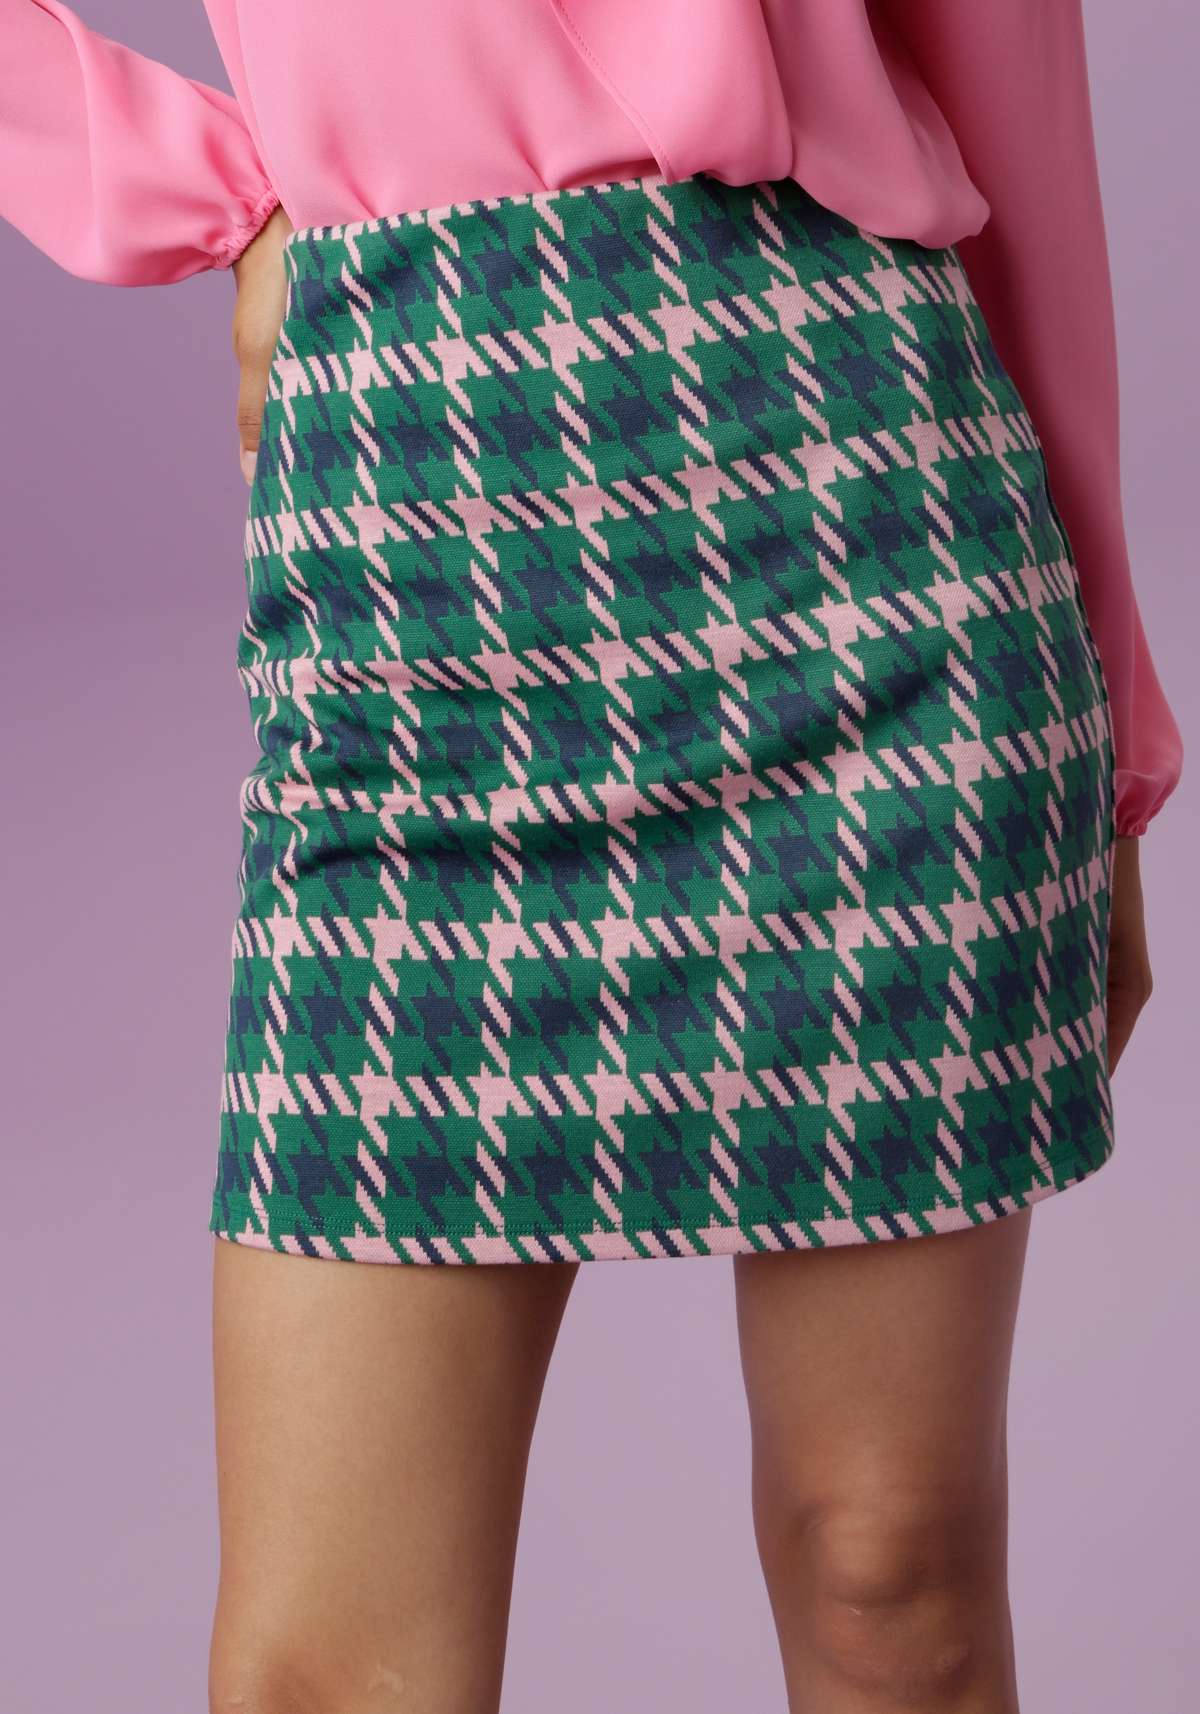 Фото Дизайн юбки прически, более 81 качественных бесплатных стоковых фото